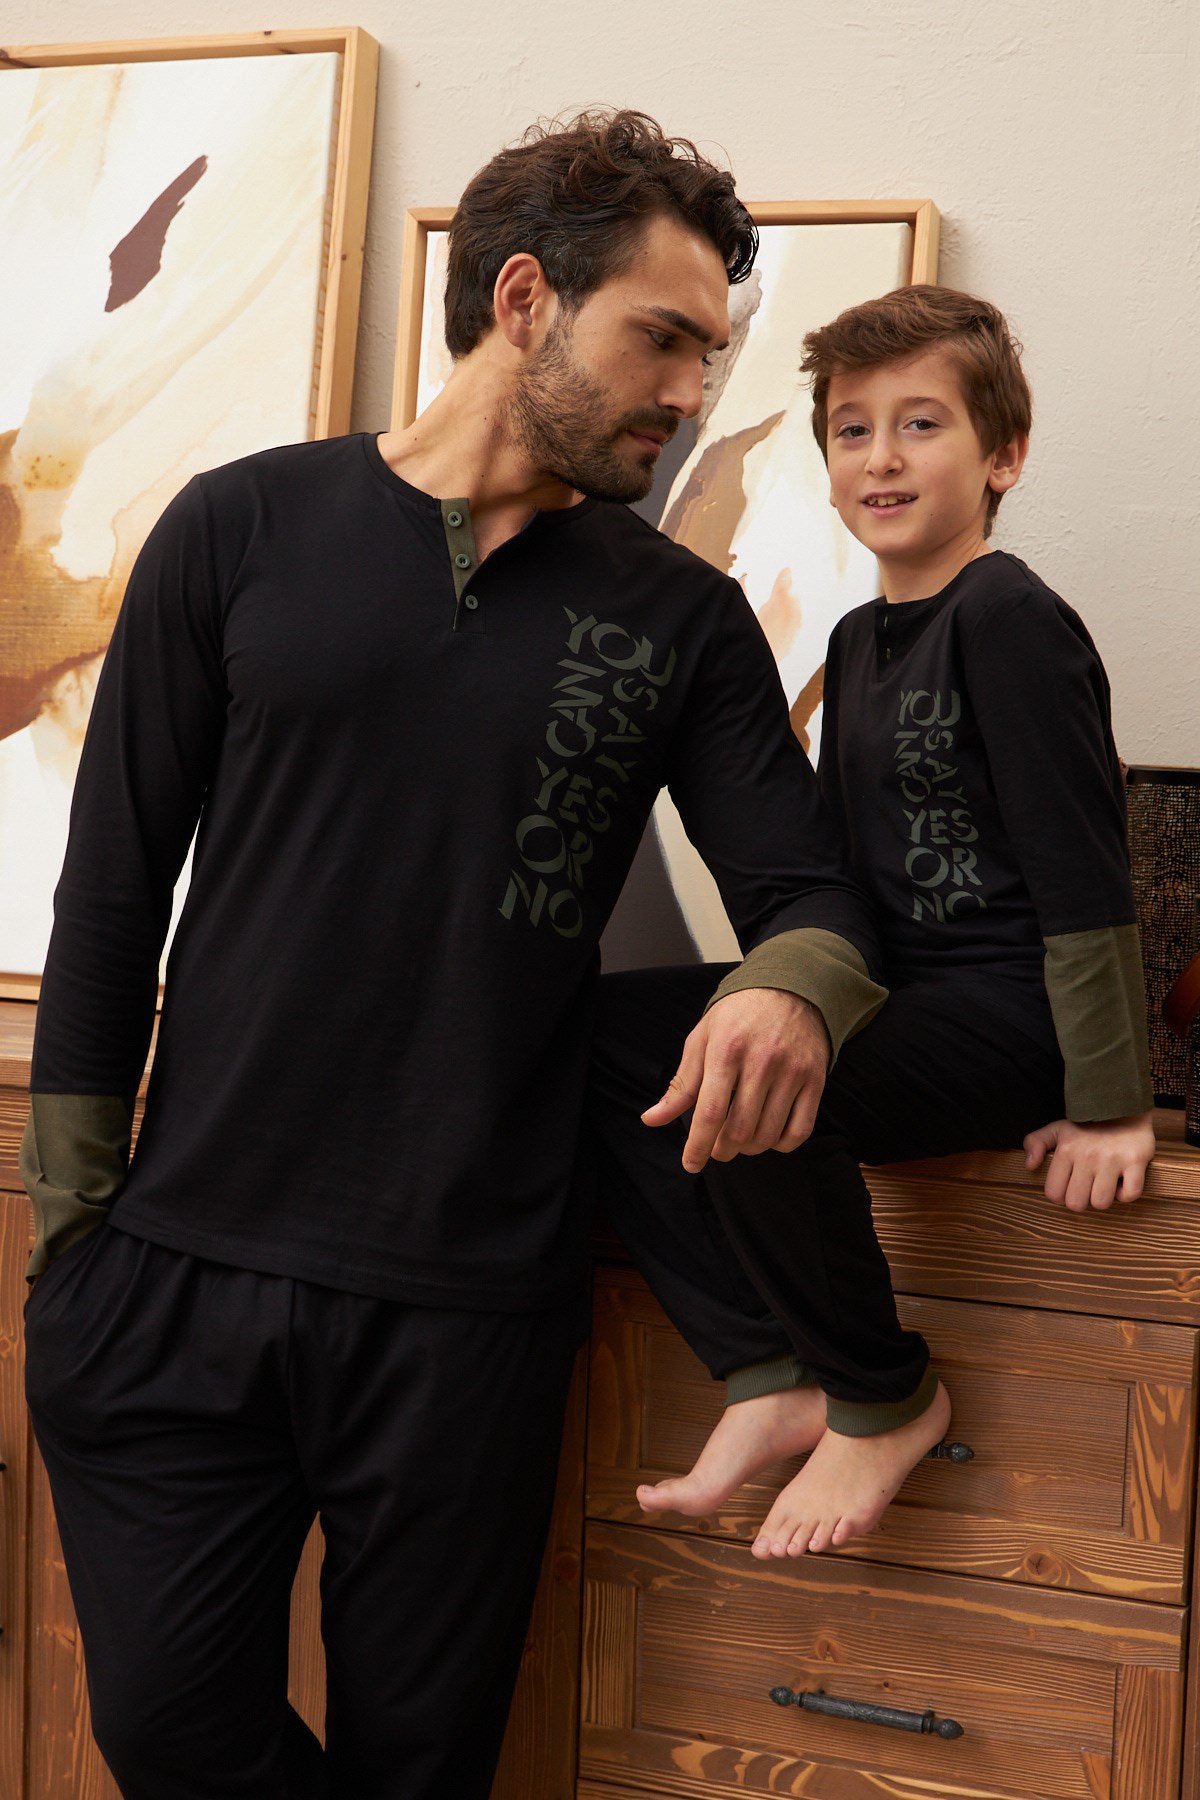 YES & NO Pijama Takımı Baba oğul ayrı ayrı satılır fıyatları farklıdır.